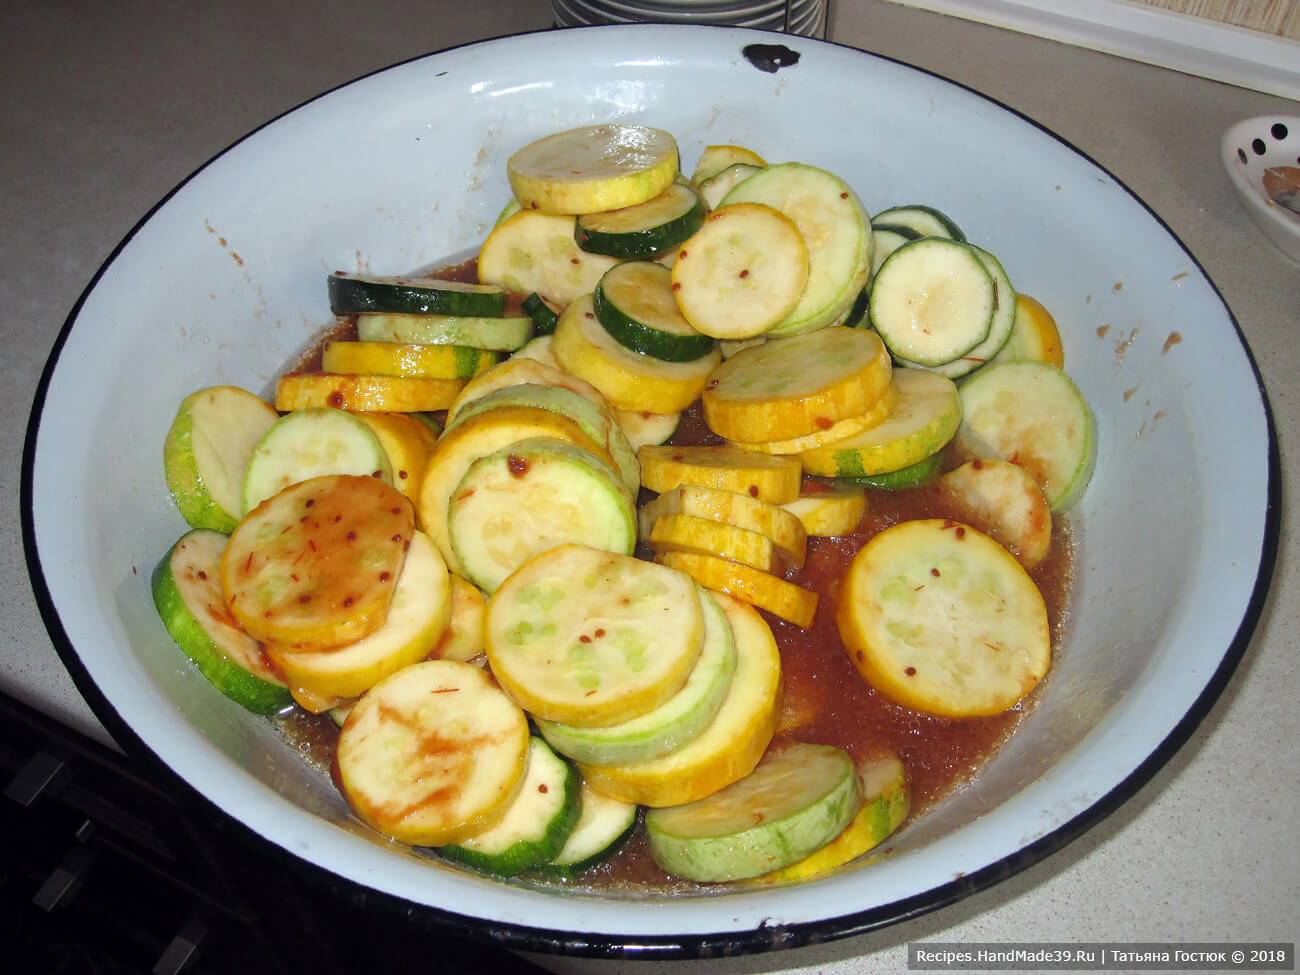 Консервированный салат из кабачков в томате – фото шаг 3. Приготовить маринад и залить им кабачки